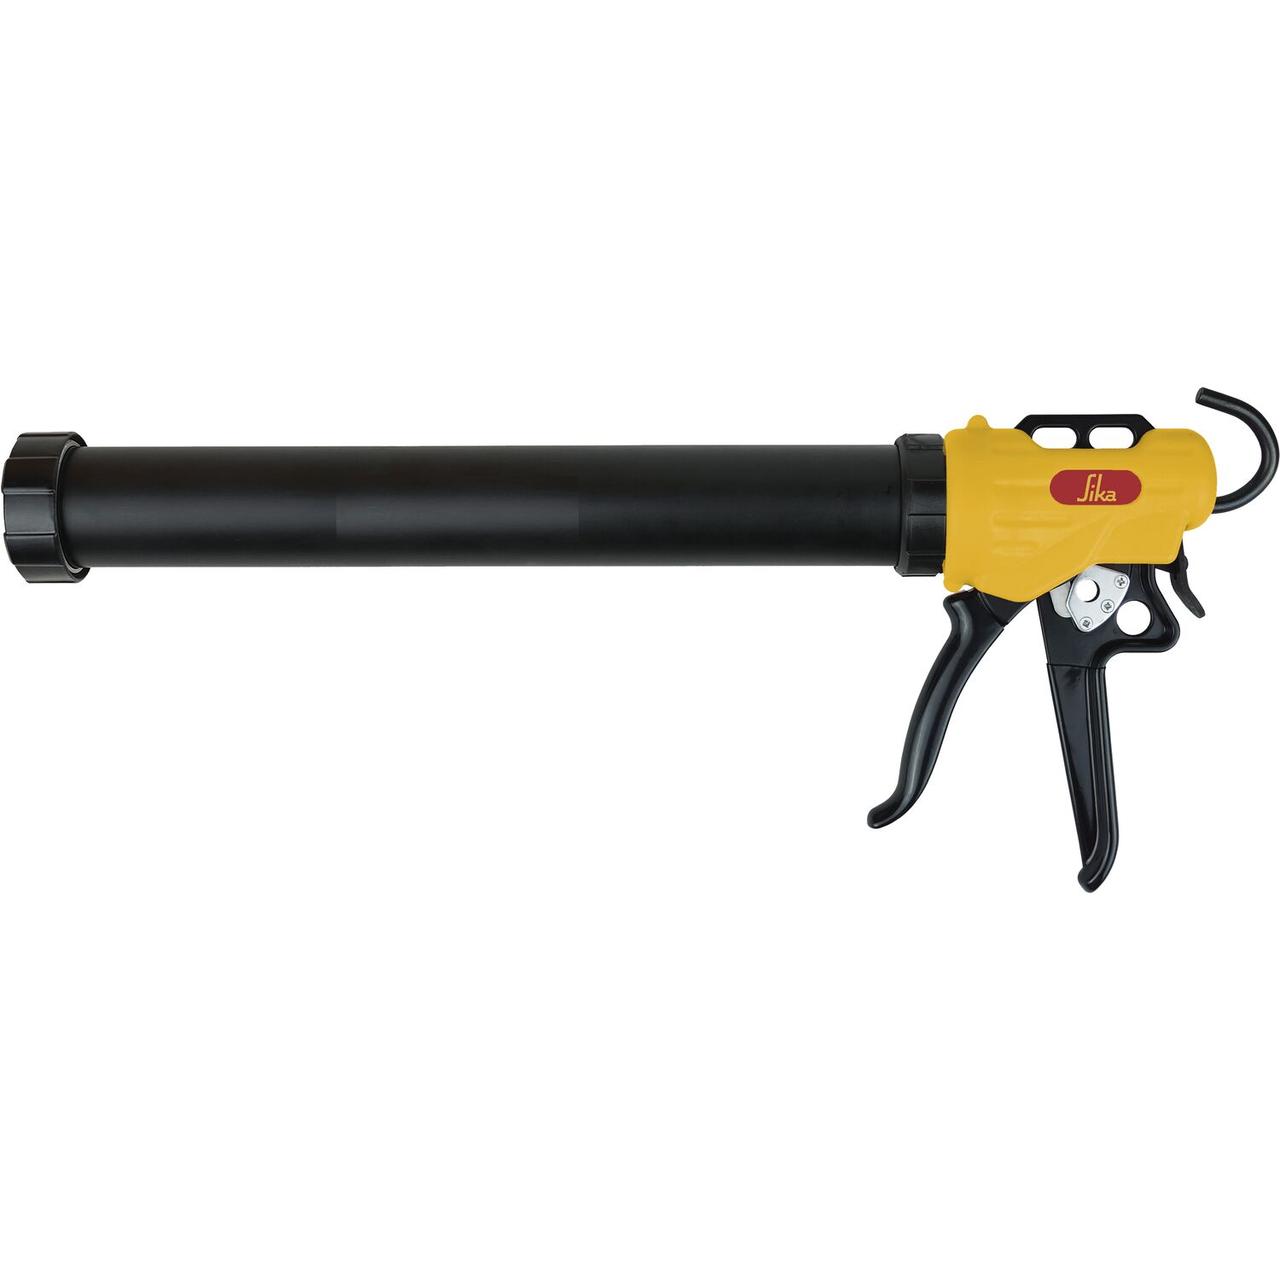 Sika handdruckpistole-600-Ручной пистолет Sika 600 мл